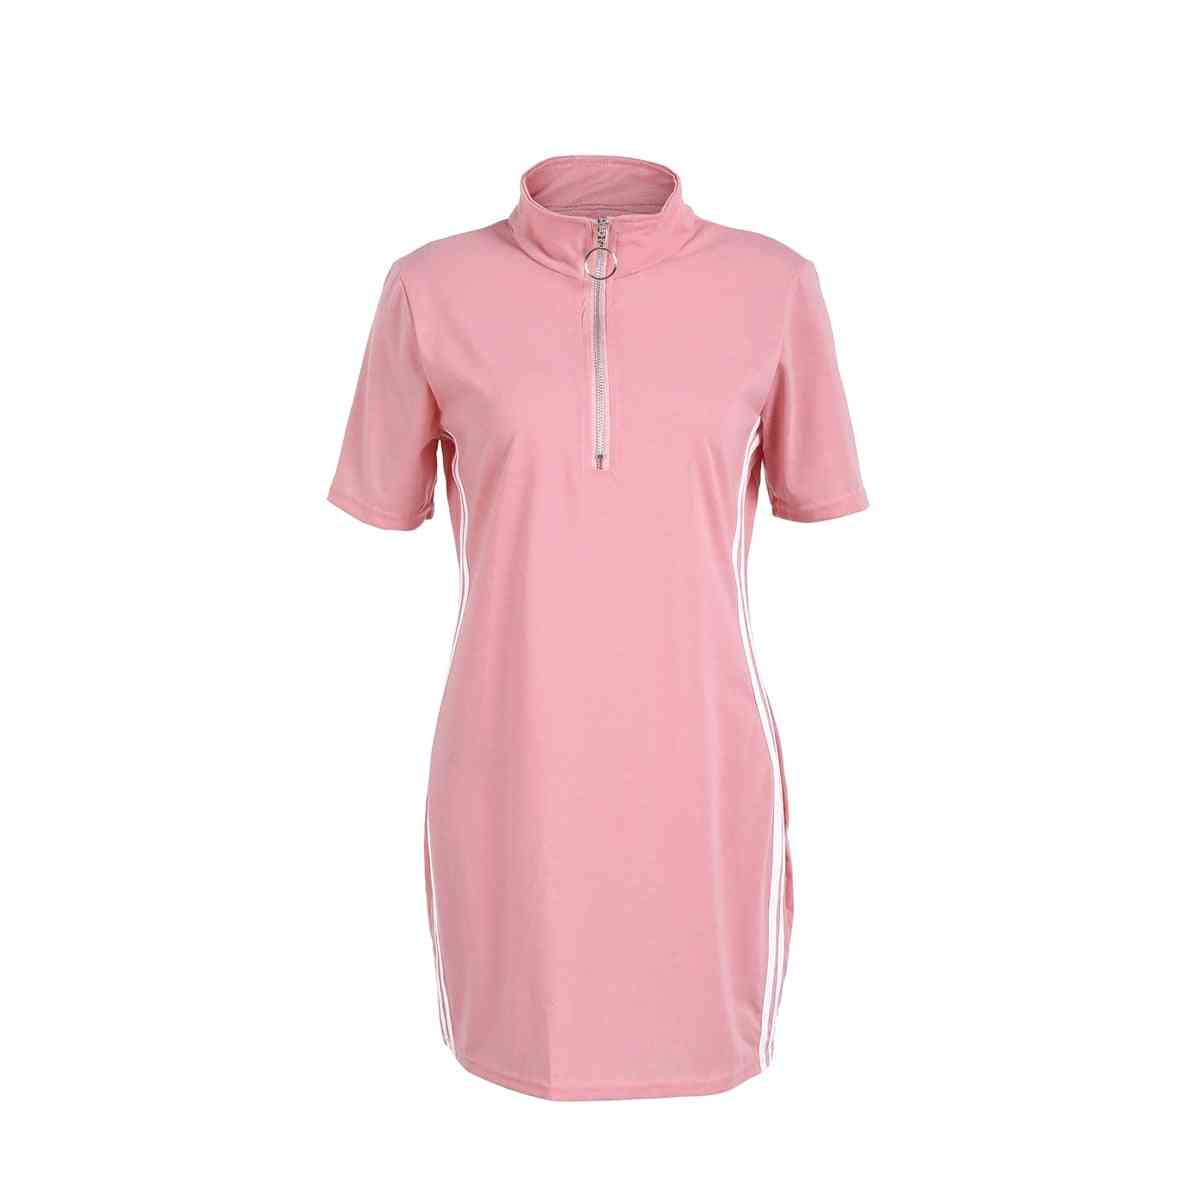 U-shape, Side Striped And Zipper Sportswear-tennis Dress